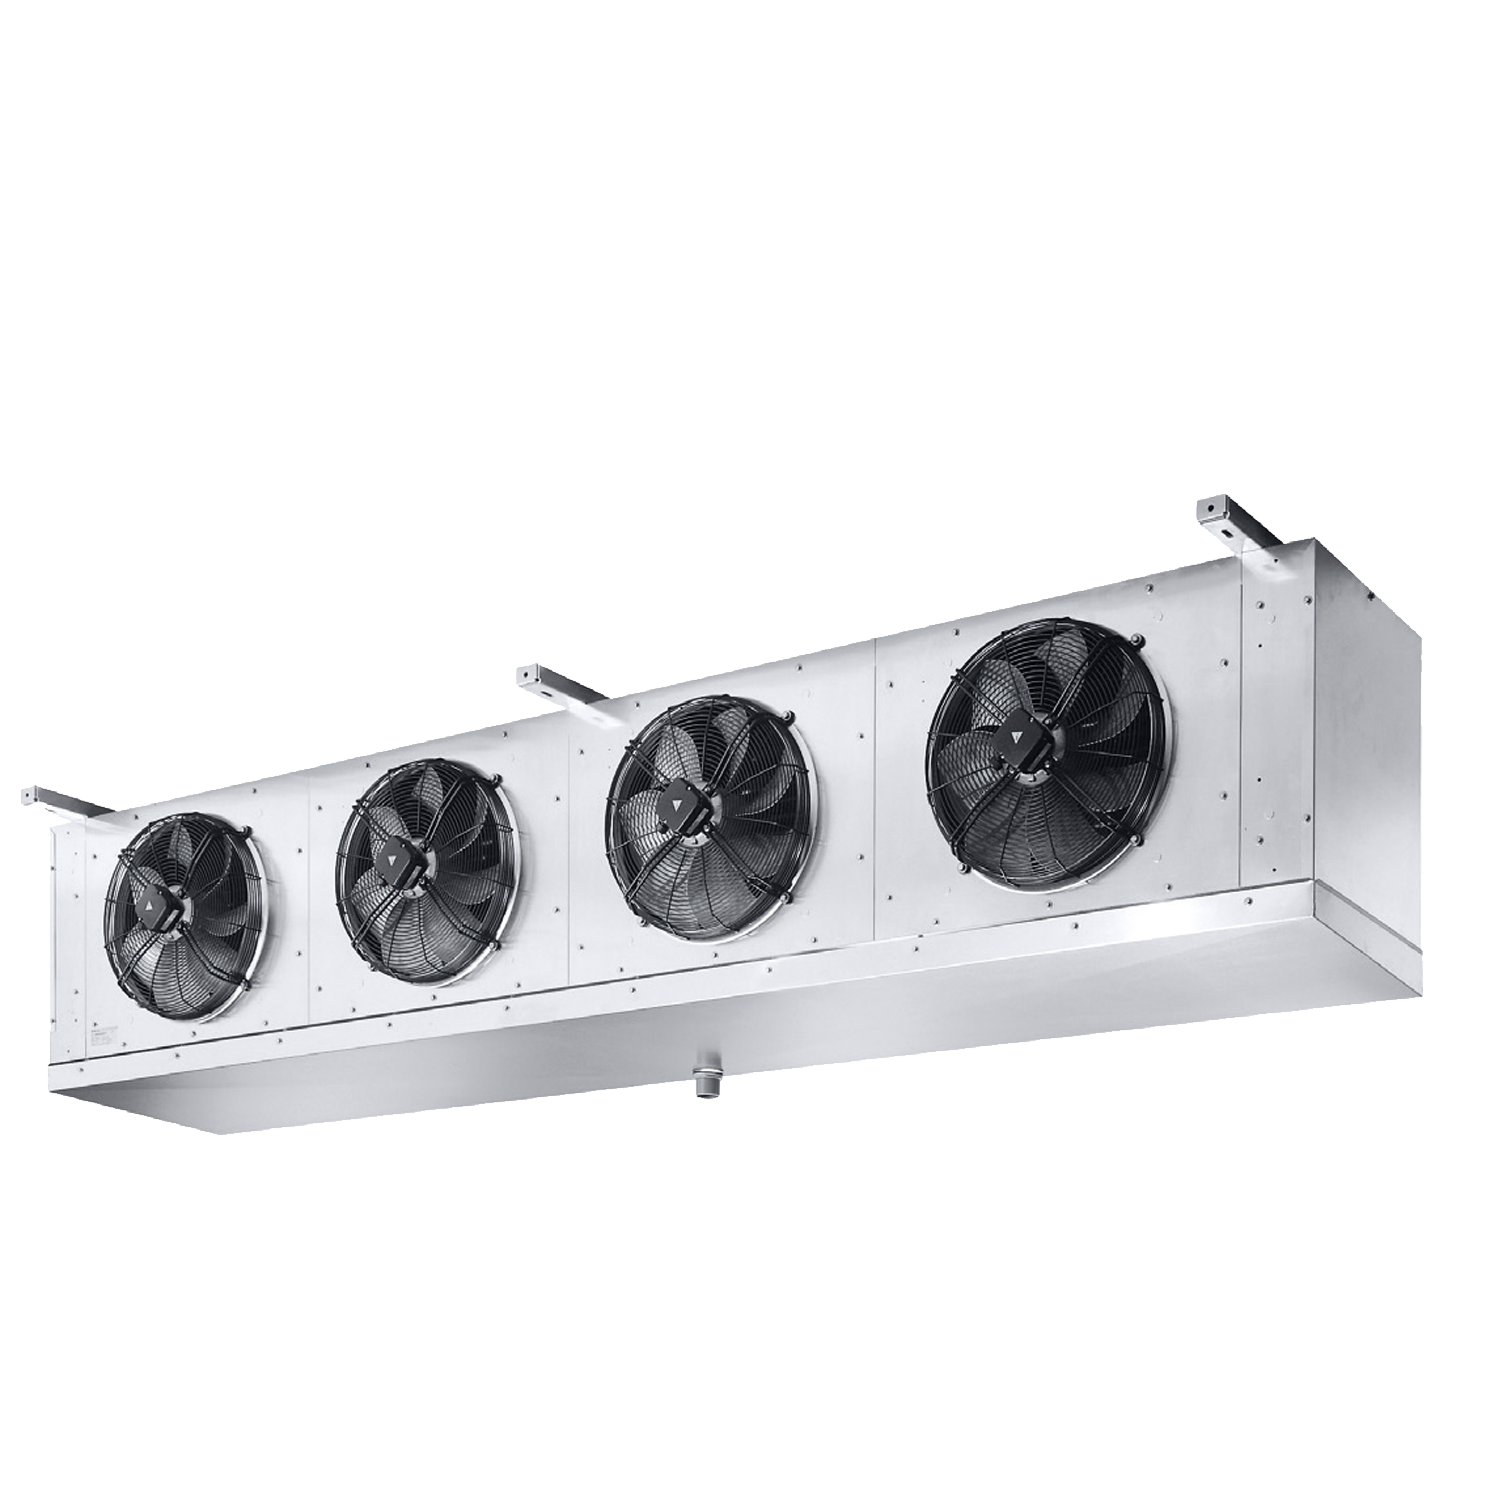 RCBX-500: Cubic ceiling evaporators with EC fans